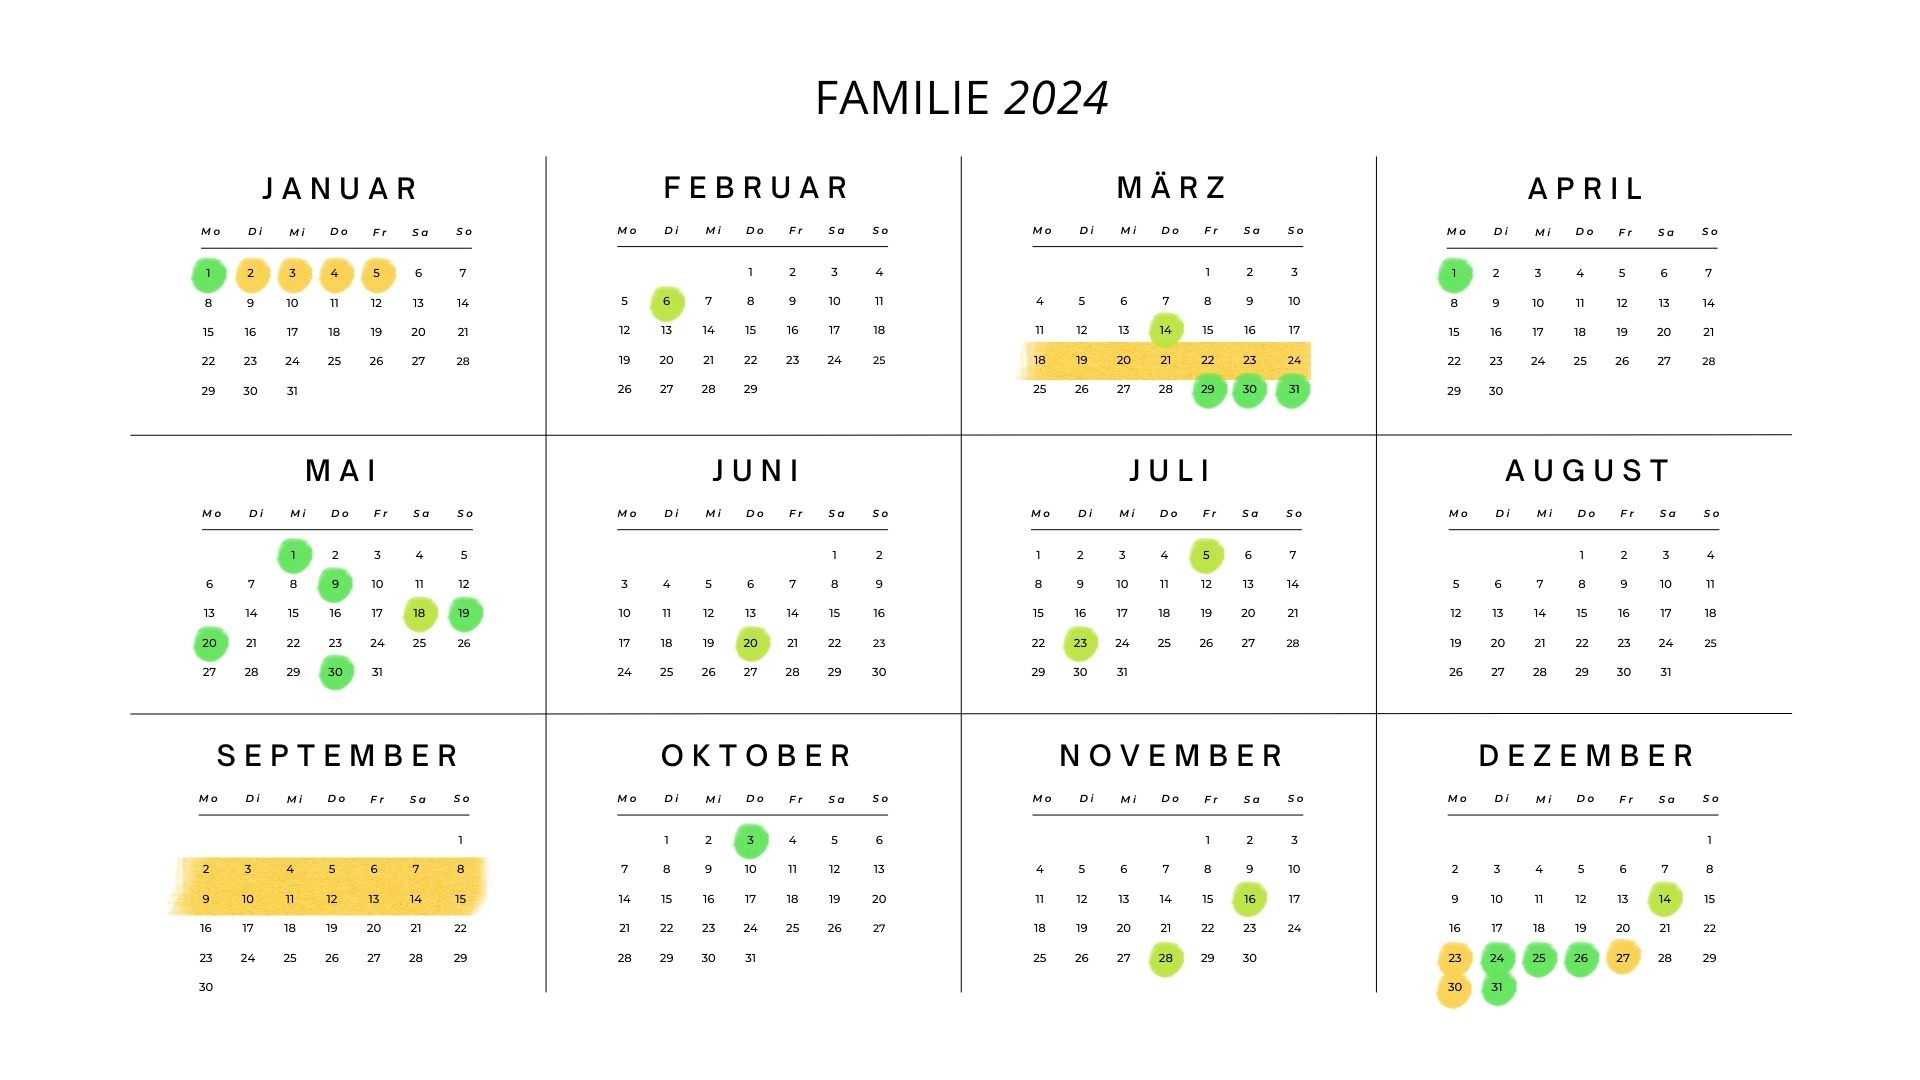 Familien-Kalender zum finden des Hochzeitstag mit markierten Geburtstagen, Feiertagen und Urlaub.